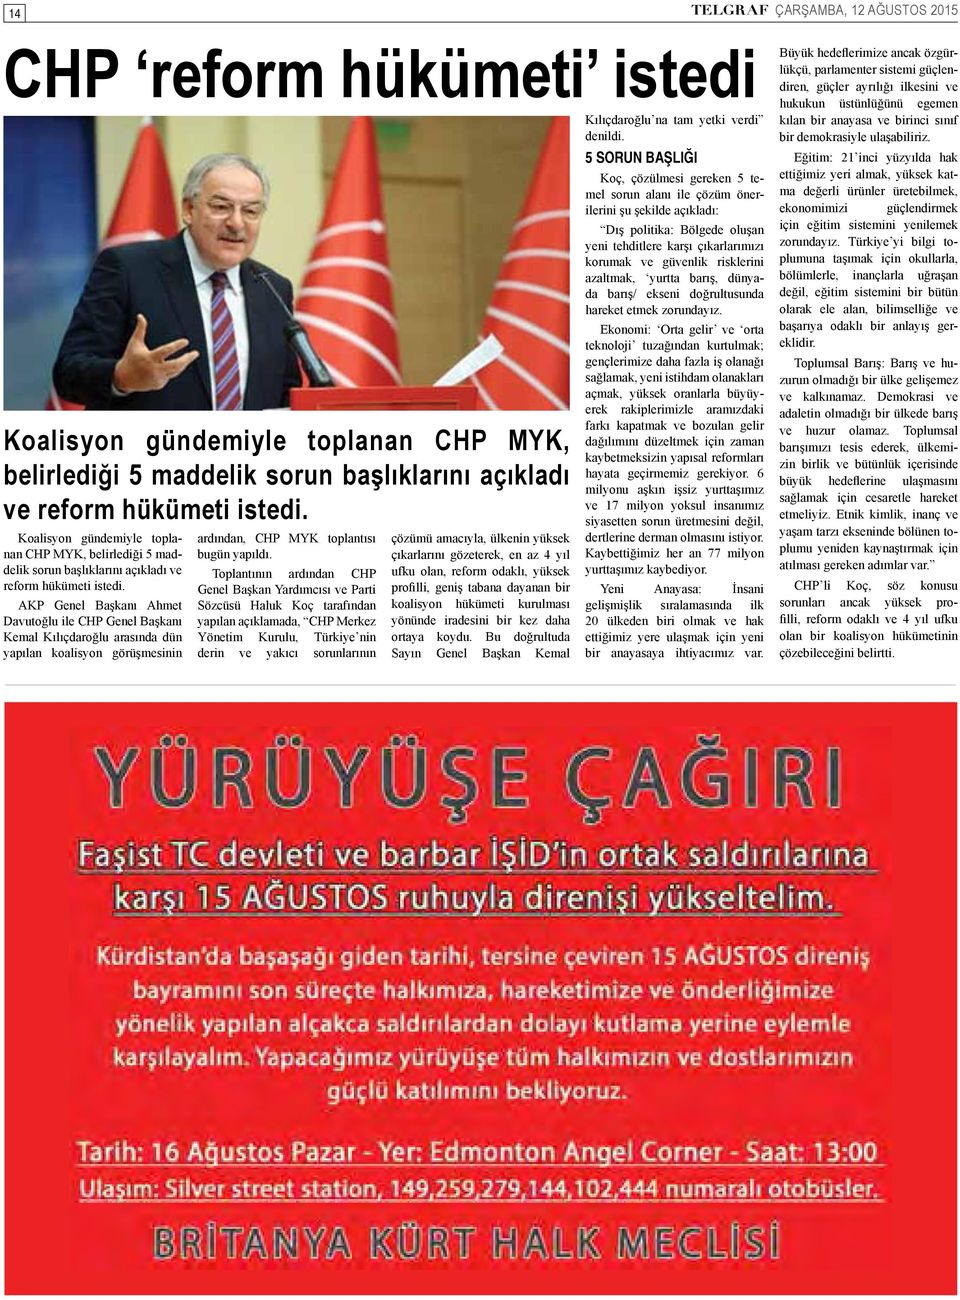 AKP Genel Başkanı Ahmet Davutoğlu ile CHP Genel Başkanı Kemal Kılıçdaroğlu arasında dün yapılan koalisyon görüşmesinin ardından, CHP MYK toplantısı bugün yapıldı.